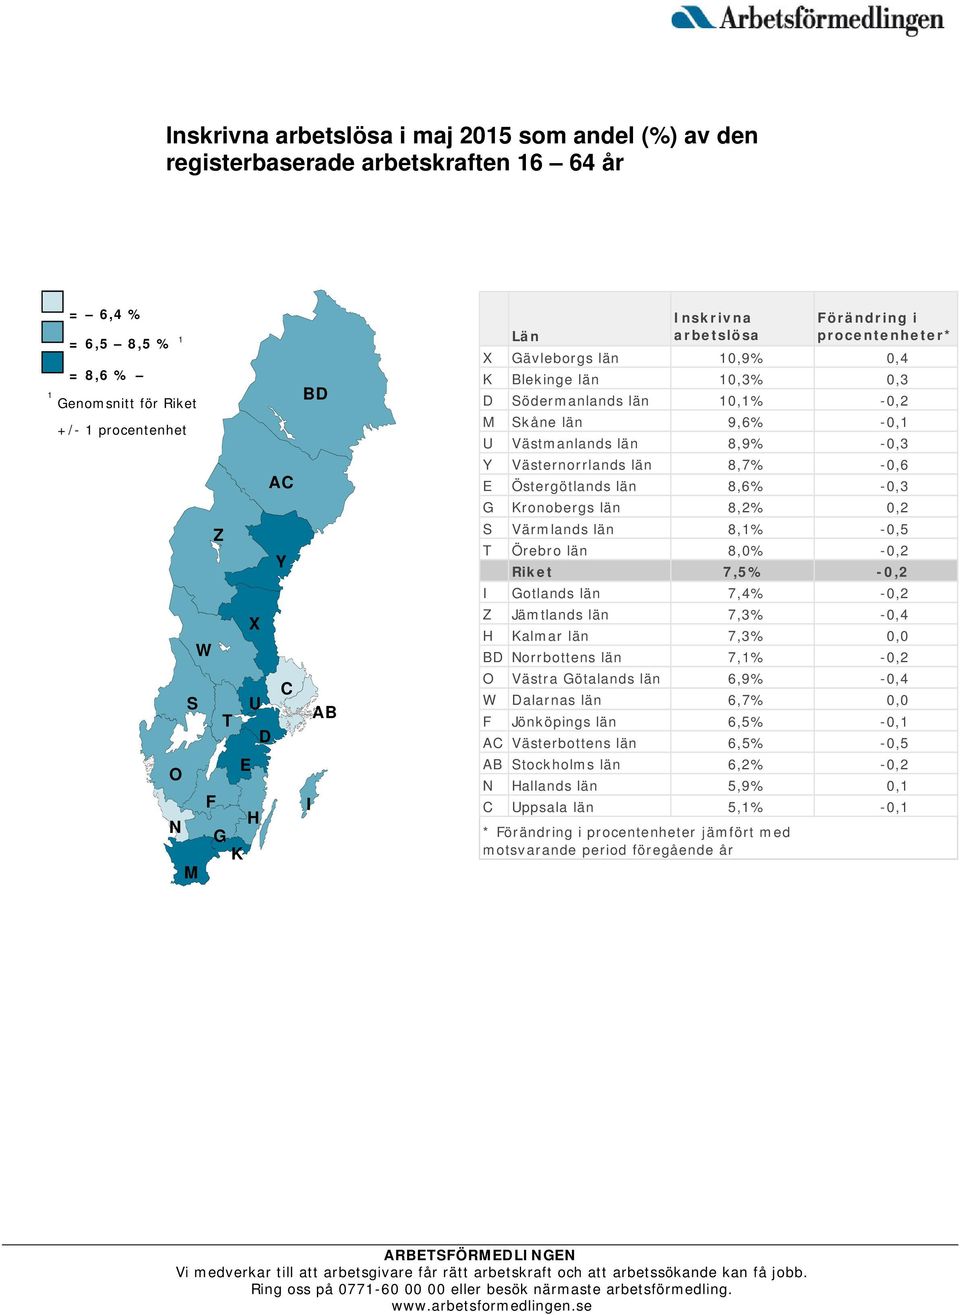 Västernorrlands län 8,7% -0,6 E Östergötlands län 8,6% -0,3 G Kronobergs län 8,2% 0,2 S Värmlands län 8,1% -0,5 T Örebro län 8,0% -0,2 Riket 7,5% -0,2 I Gotlands län 7,4% -0,2 Z Jämtlands län 7,3%